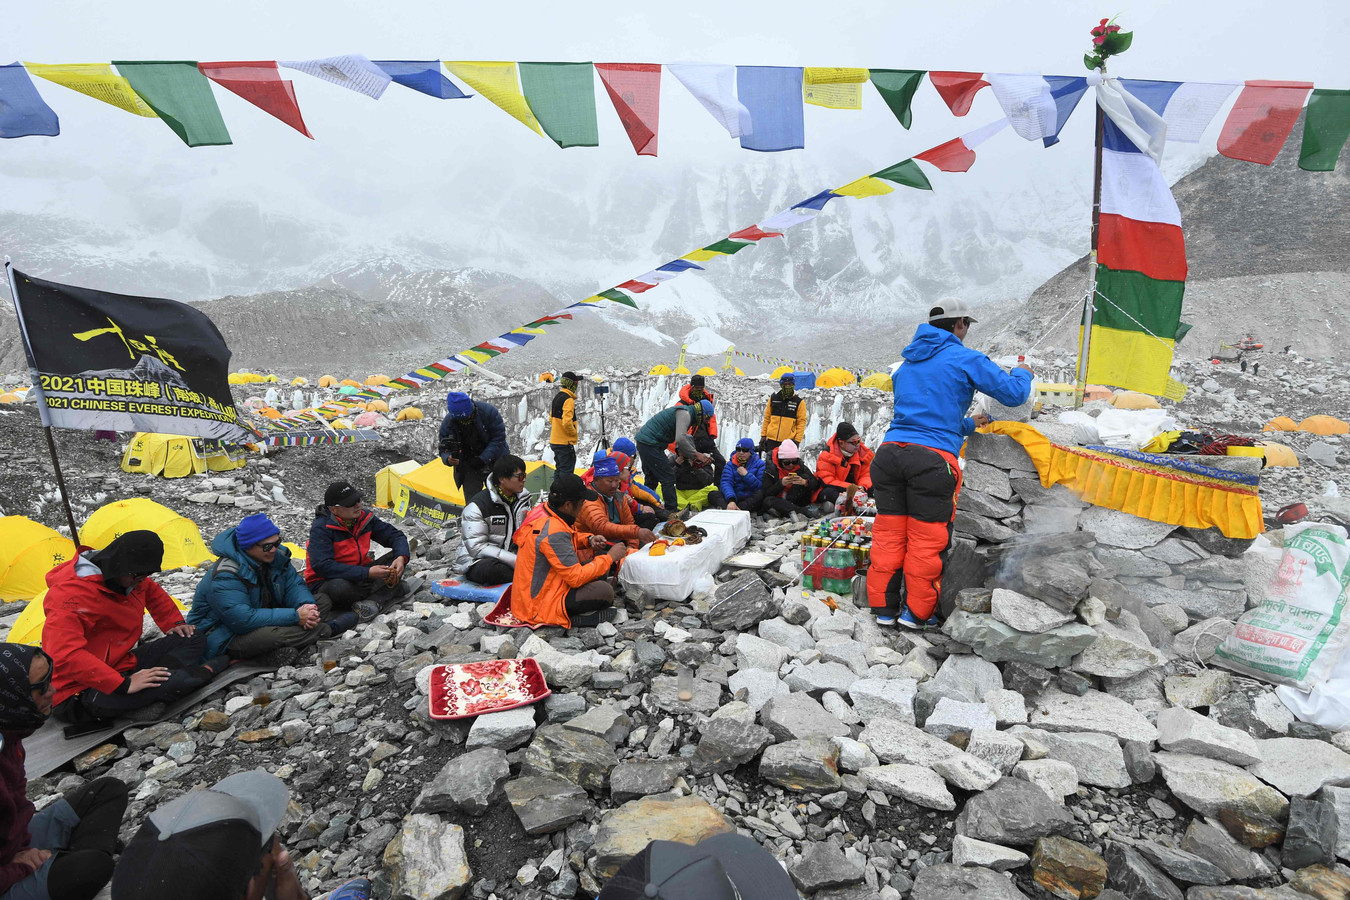 Een ritueel van een expeditie voor ze beginnen aan de klim naar de top van de hoogste berg.